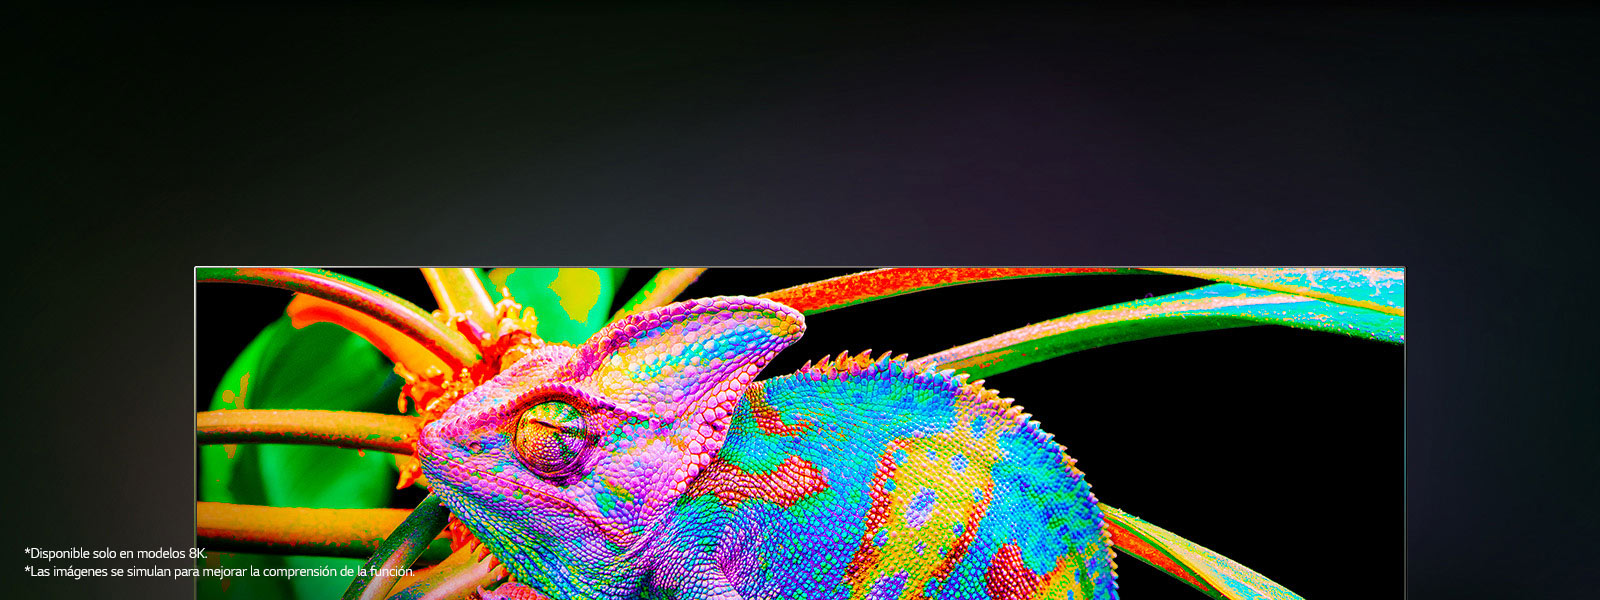 Hay un televisor en el que se amplían los coloridos camaleones para mostrar la piel en detalle.